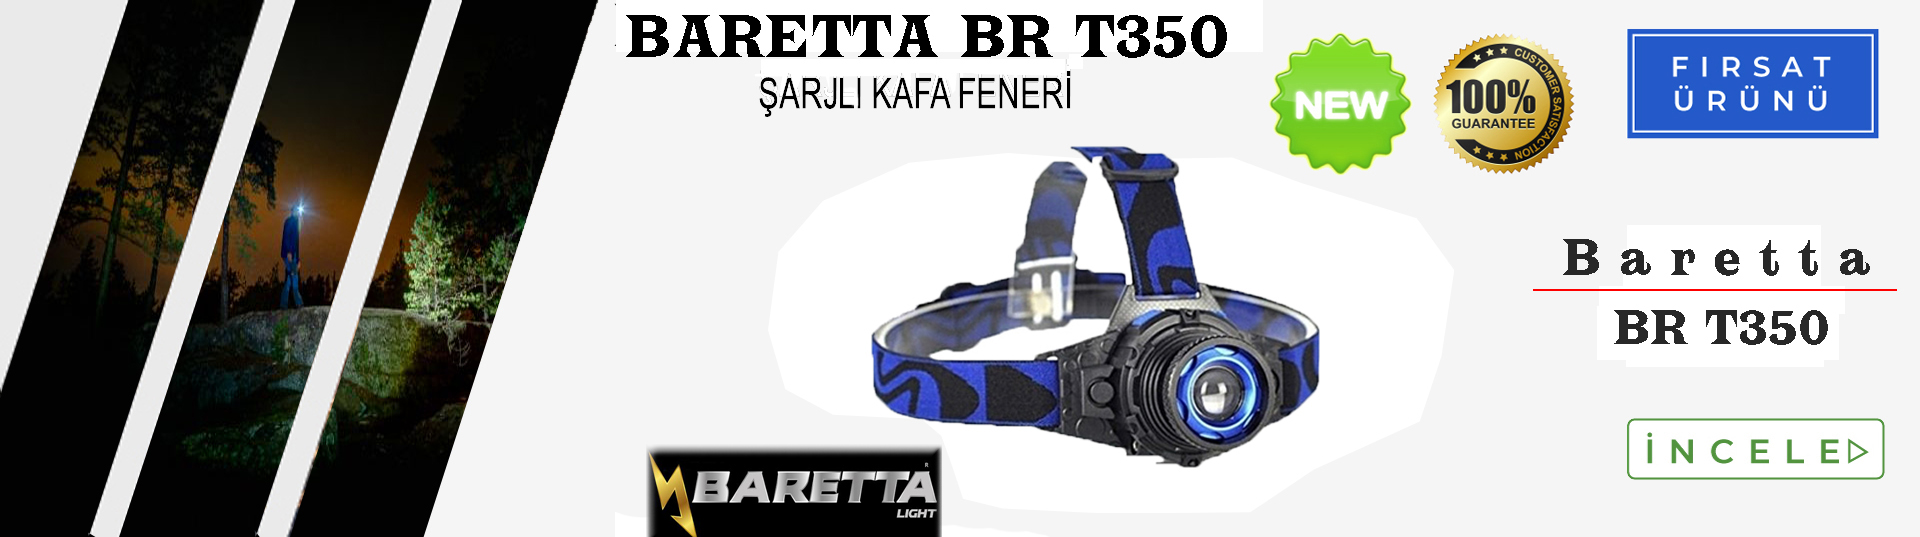 Baretta Brt350 Kafa Feneri